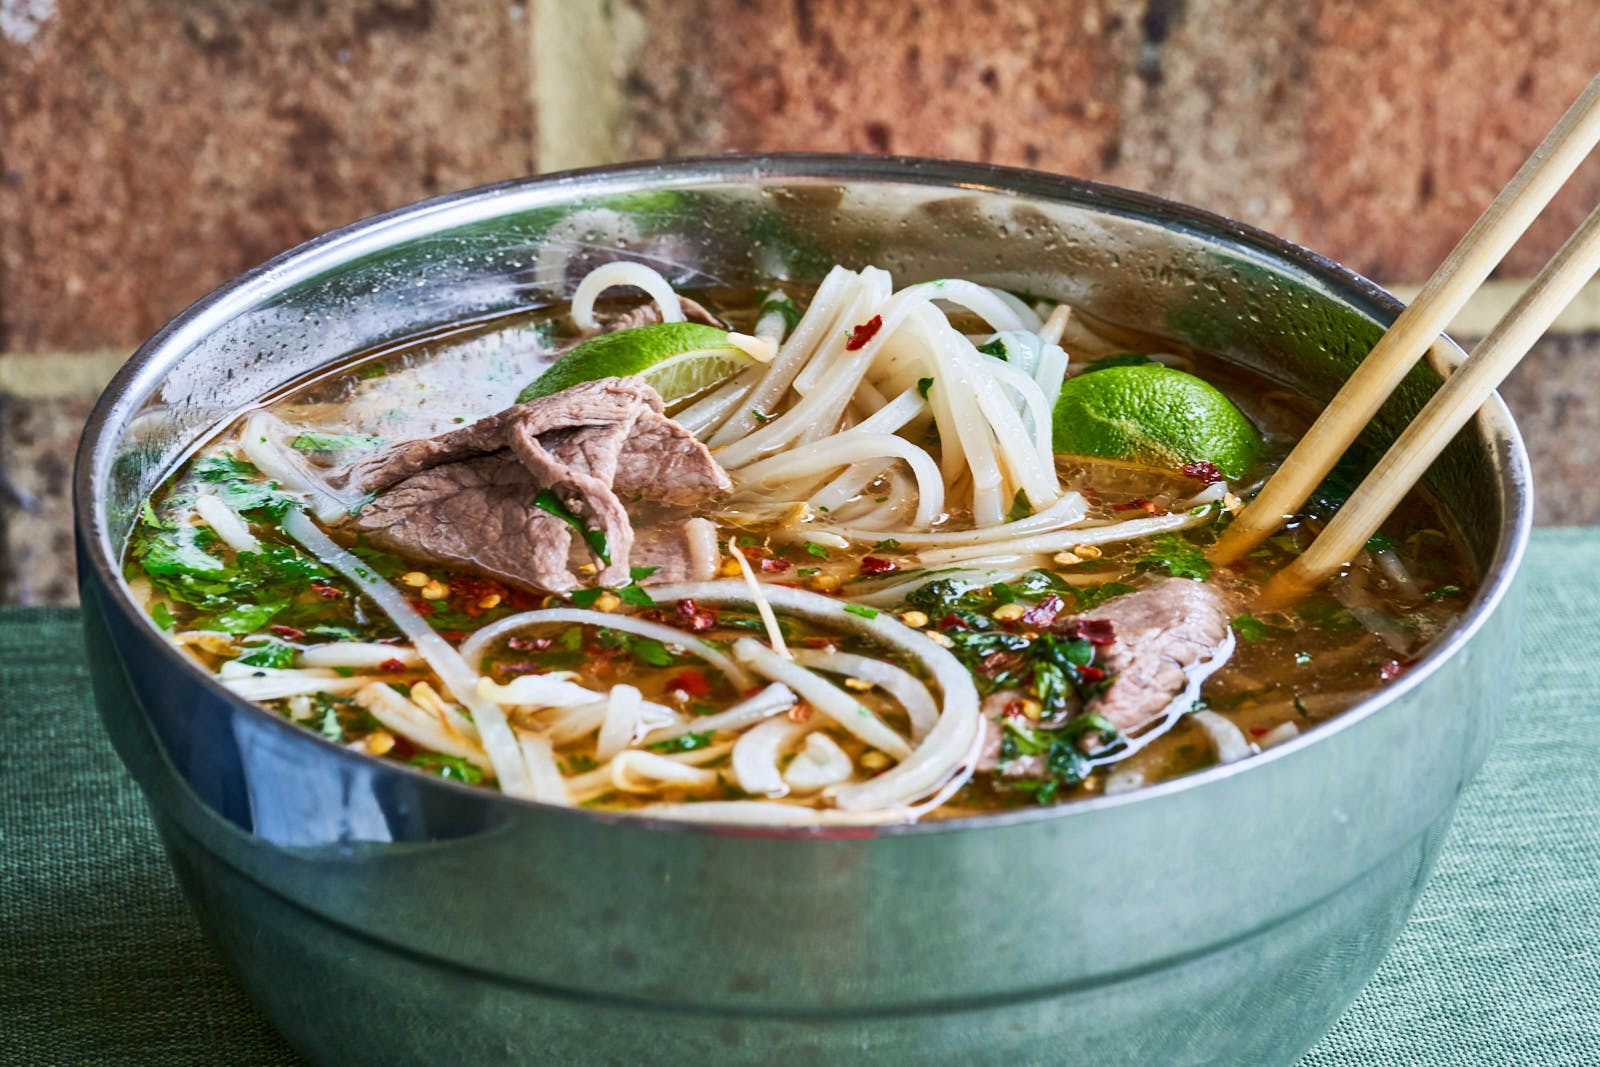 Kanes Cuisine Pho (Vietnamese noodle soup)